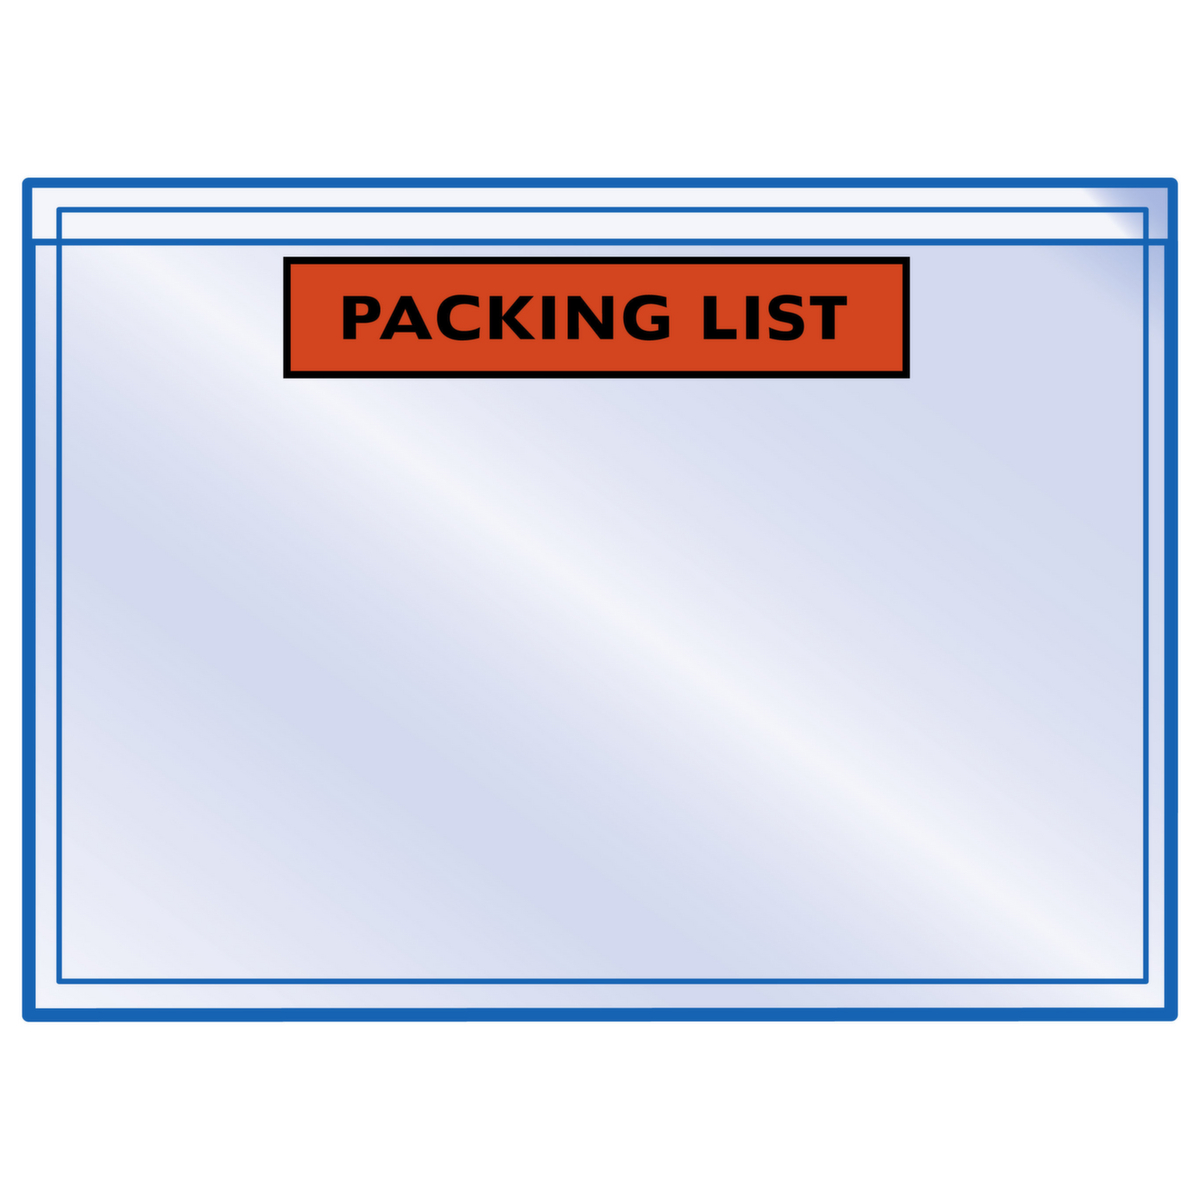 Raja Dokumententasche "Packing List", DIN A5 Standard 1 ZOOM